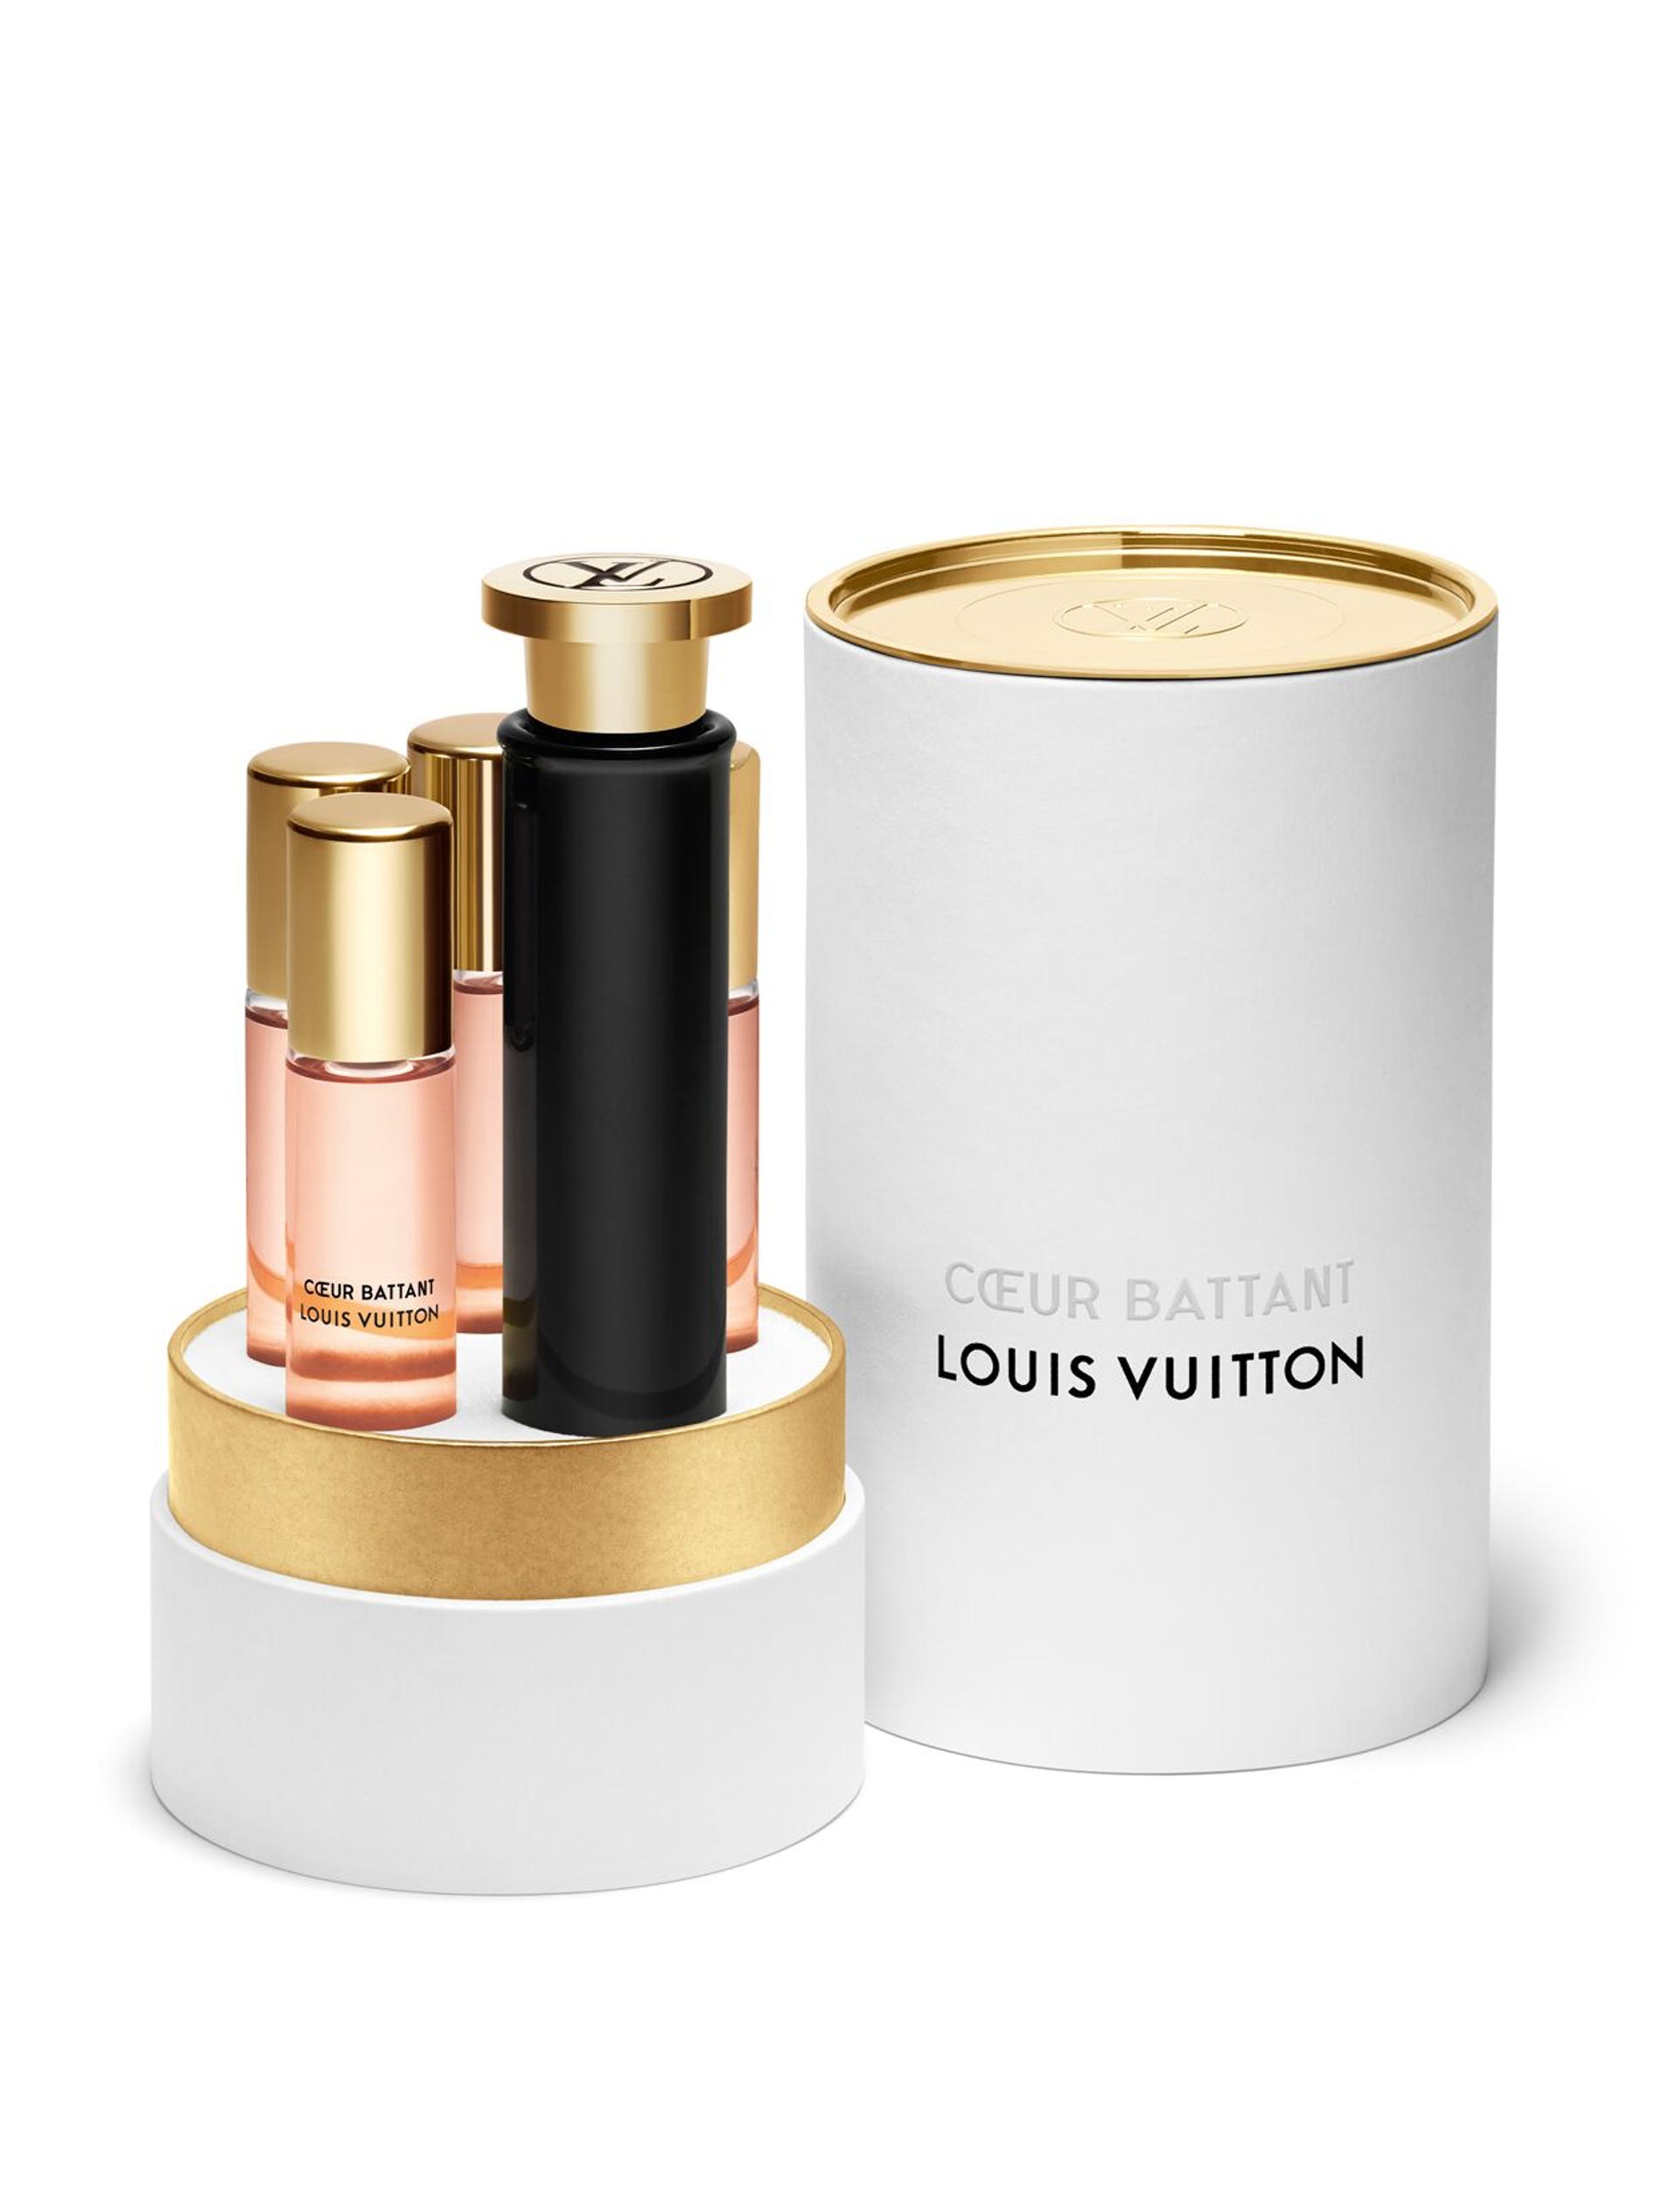 Cœur Battant Louis Vuitton perfume - a new fragrance for women 2019